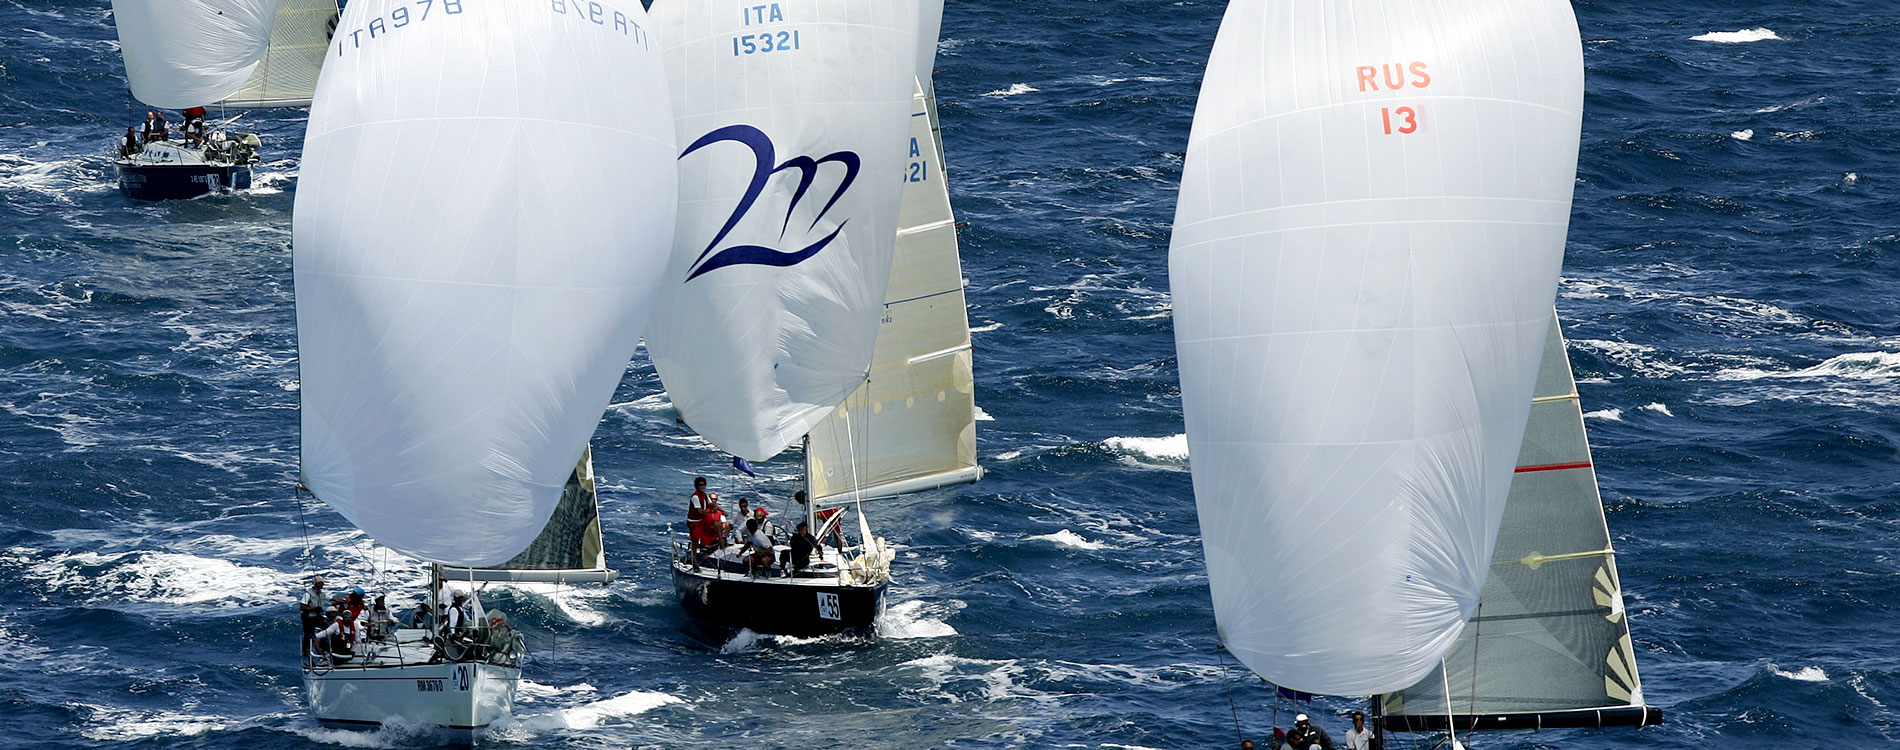 Supporto tecnico organizzativo per sailing team